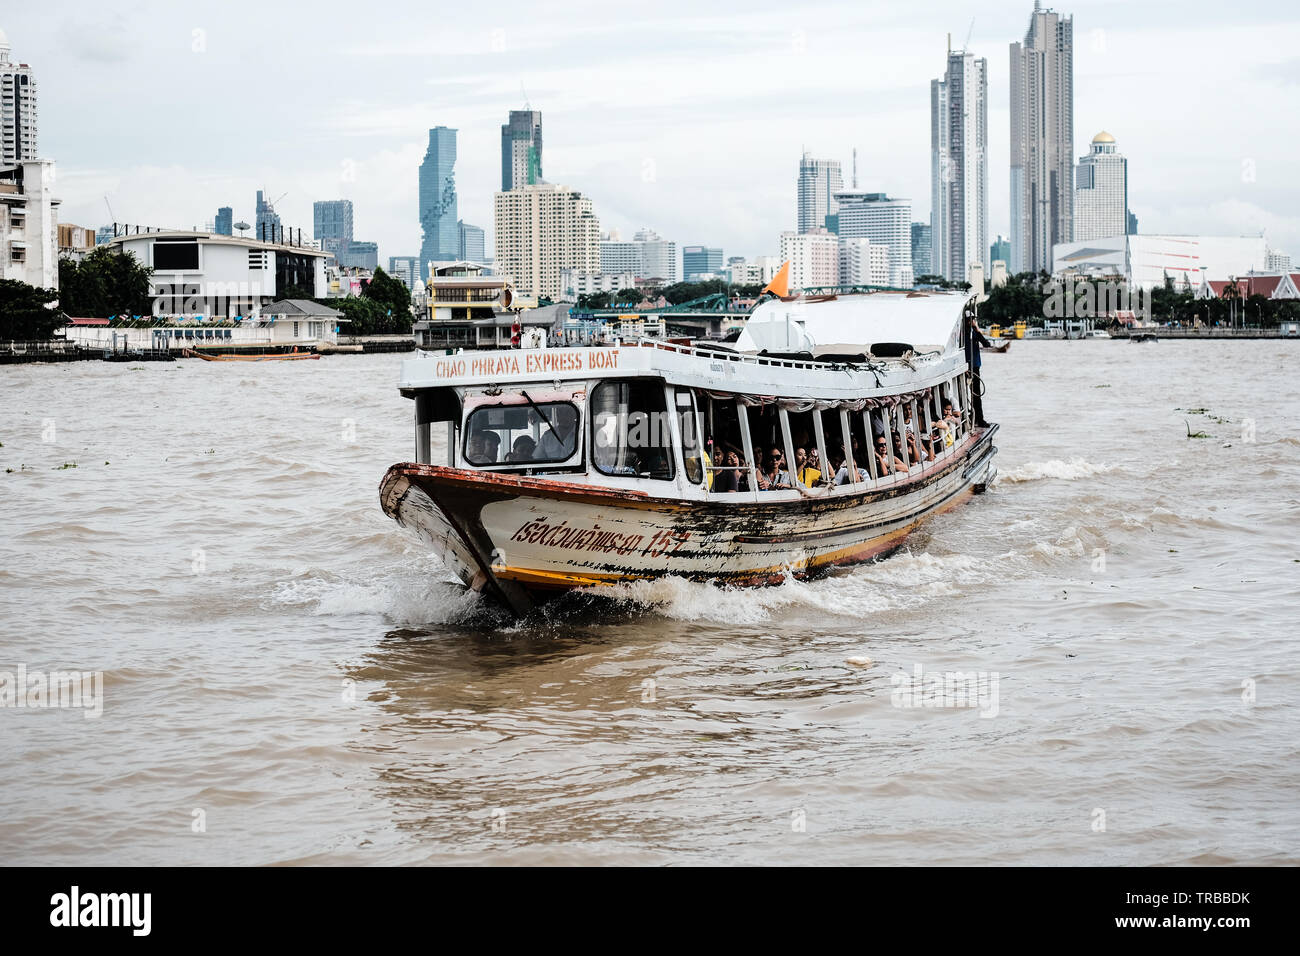 Boat on Chao Phraya River Bangkok Thailand Stock Photo